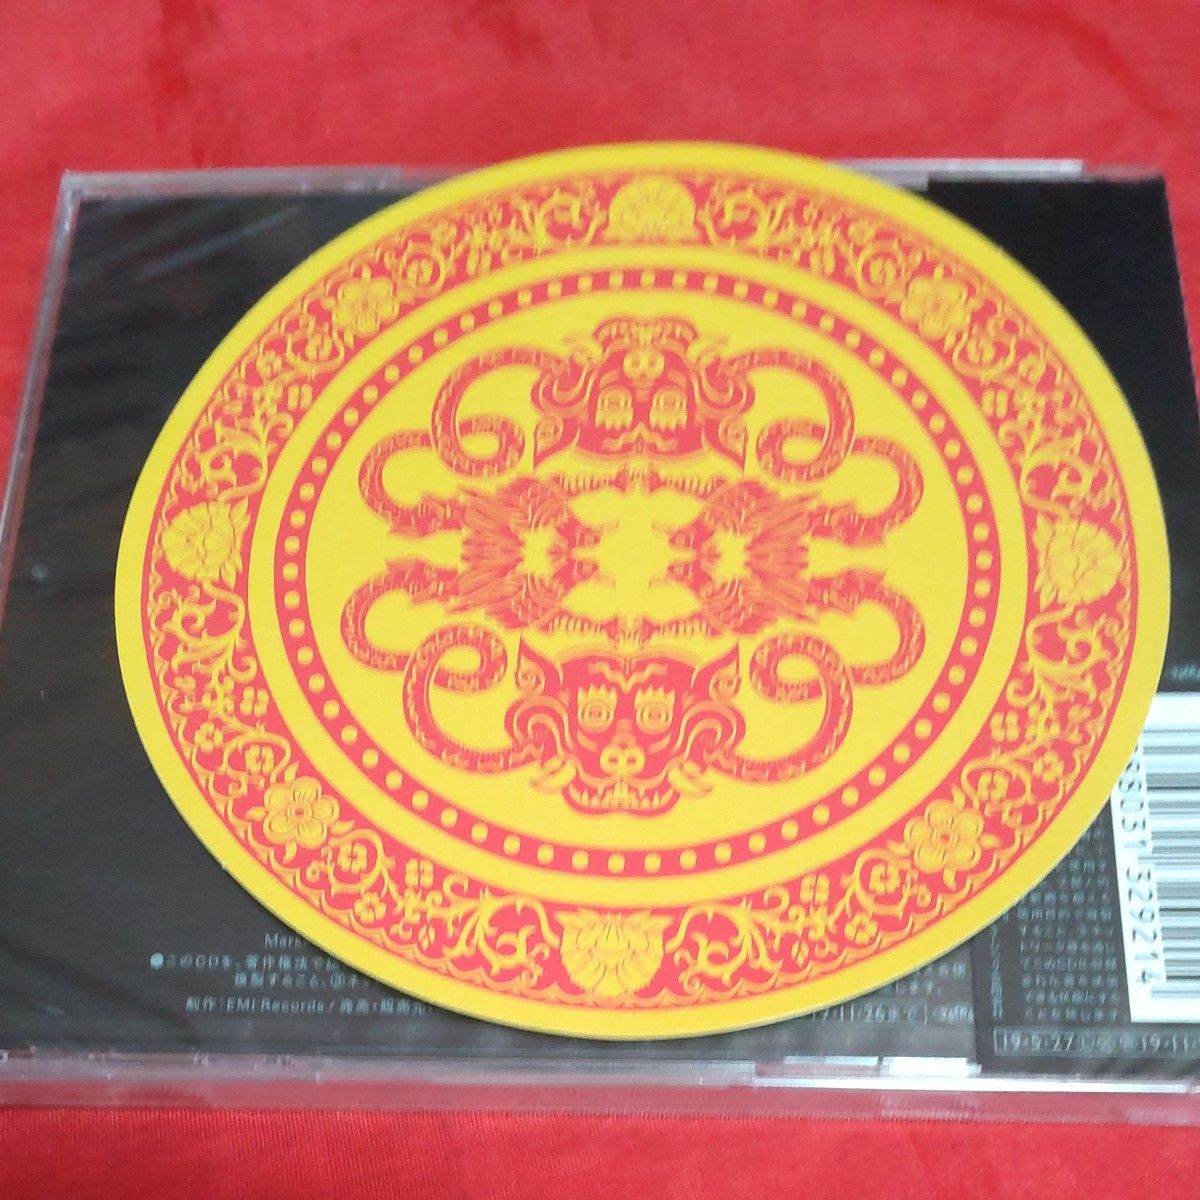 未開封新品 椎名林檎 三毒史 通常盤 CD 早期購入特典付き 櫻井敦司